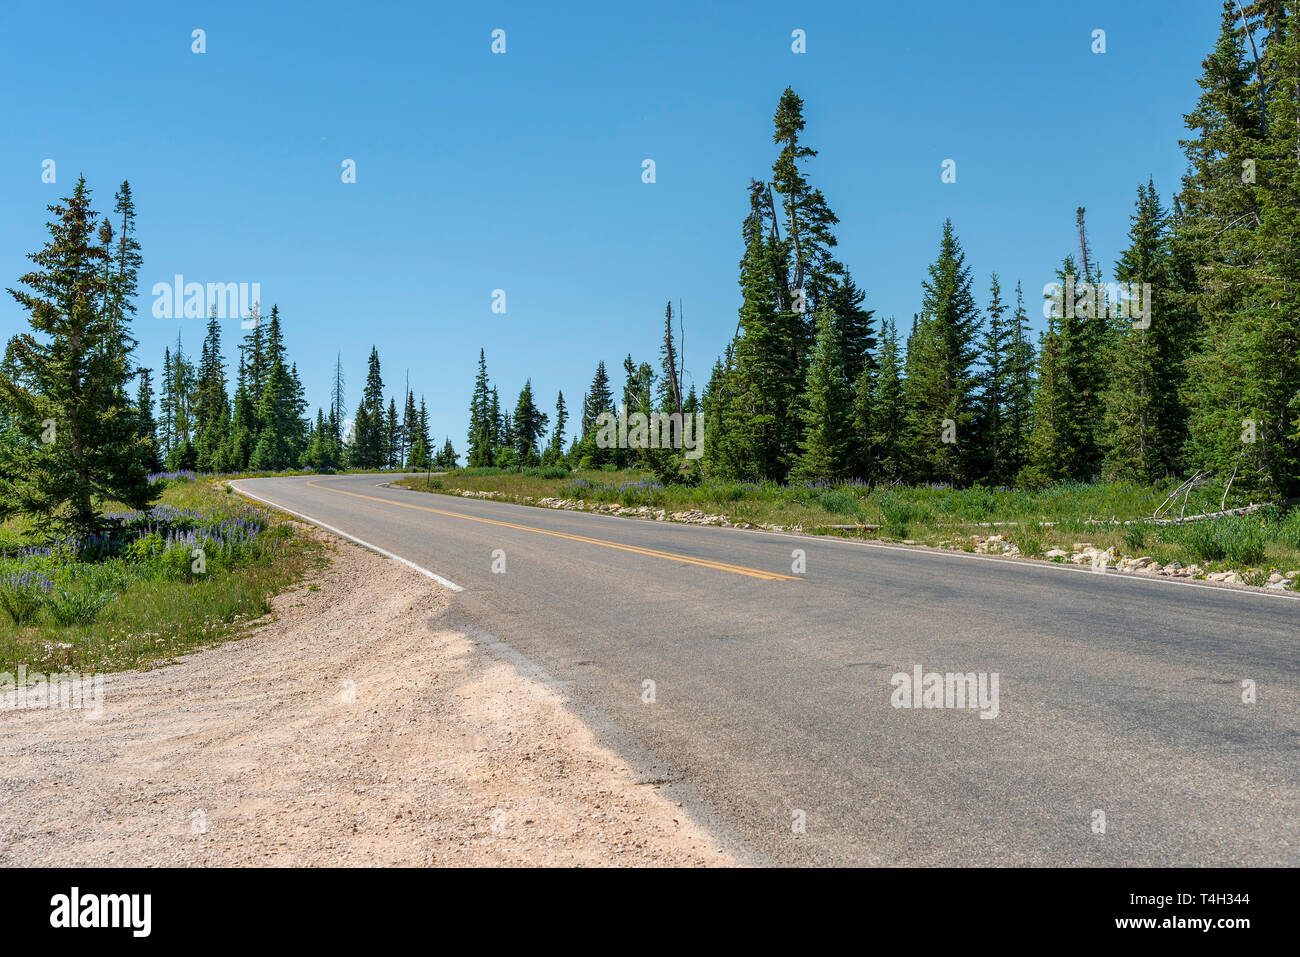 La ghiaia tirare fuori da due corsie con curva passando attraverso verdi campi e tall verde di pini sotto un cielo blu chiaro. Foto Stock